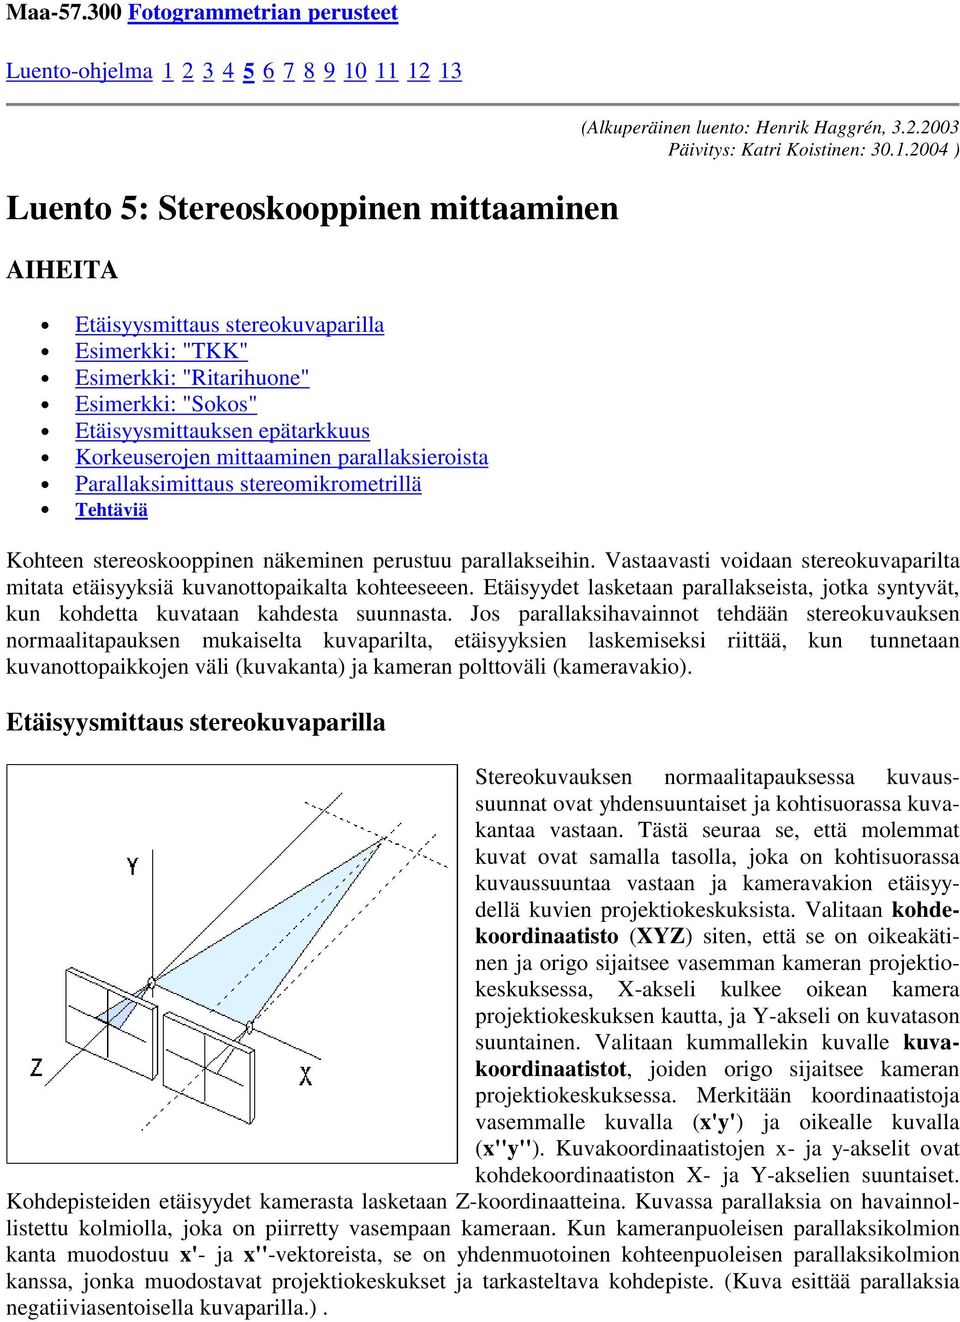 Esimerkki: "Sokos" Etäisyysmittauksen epätarkkuus Korkeuserojen mittaaminen parallaksieroista Parallaksimittaus stereomikrometrillä Tehtäviä (Alkuperäinen luento: Henrik Haggrén, 3.2.